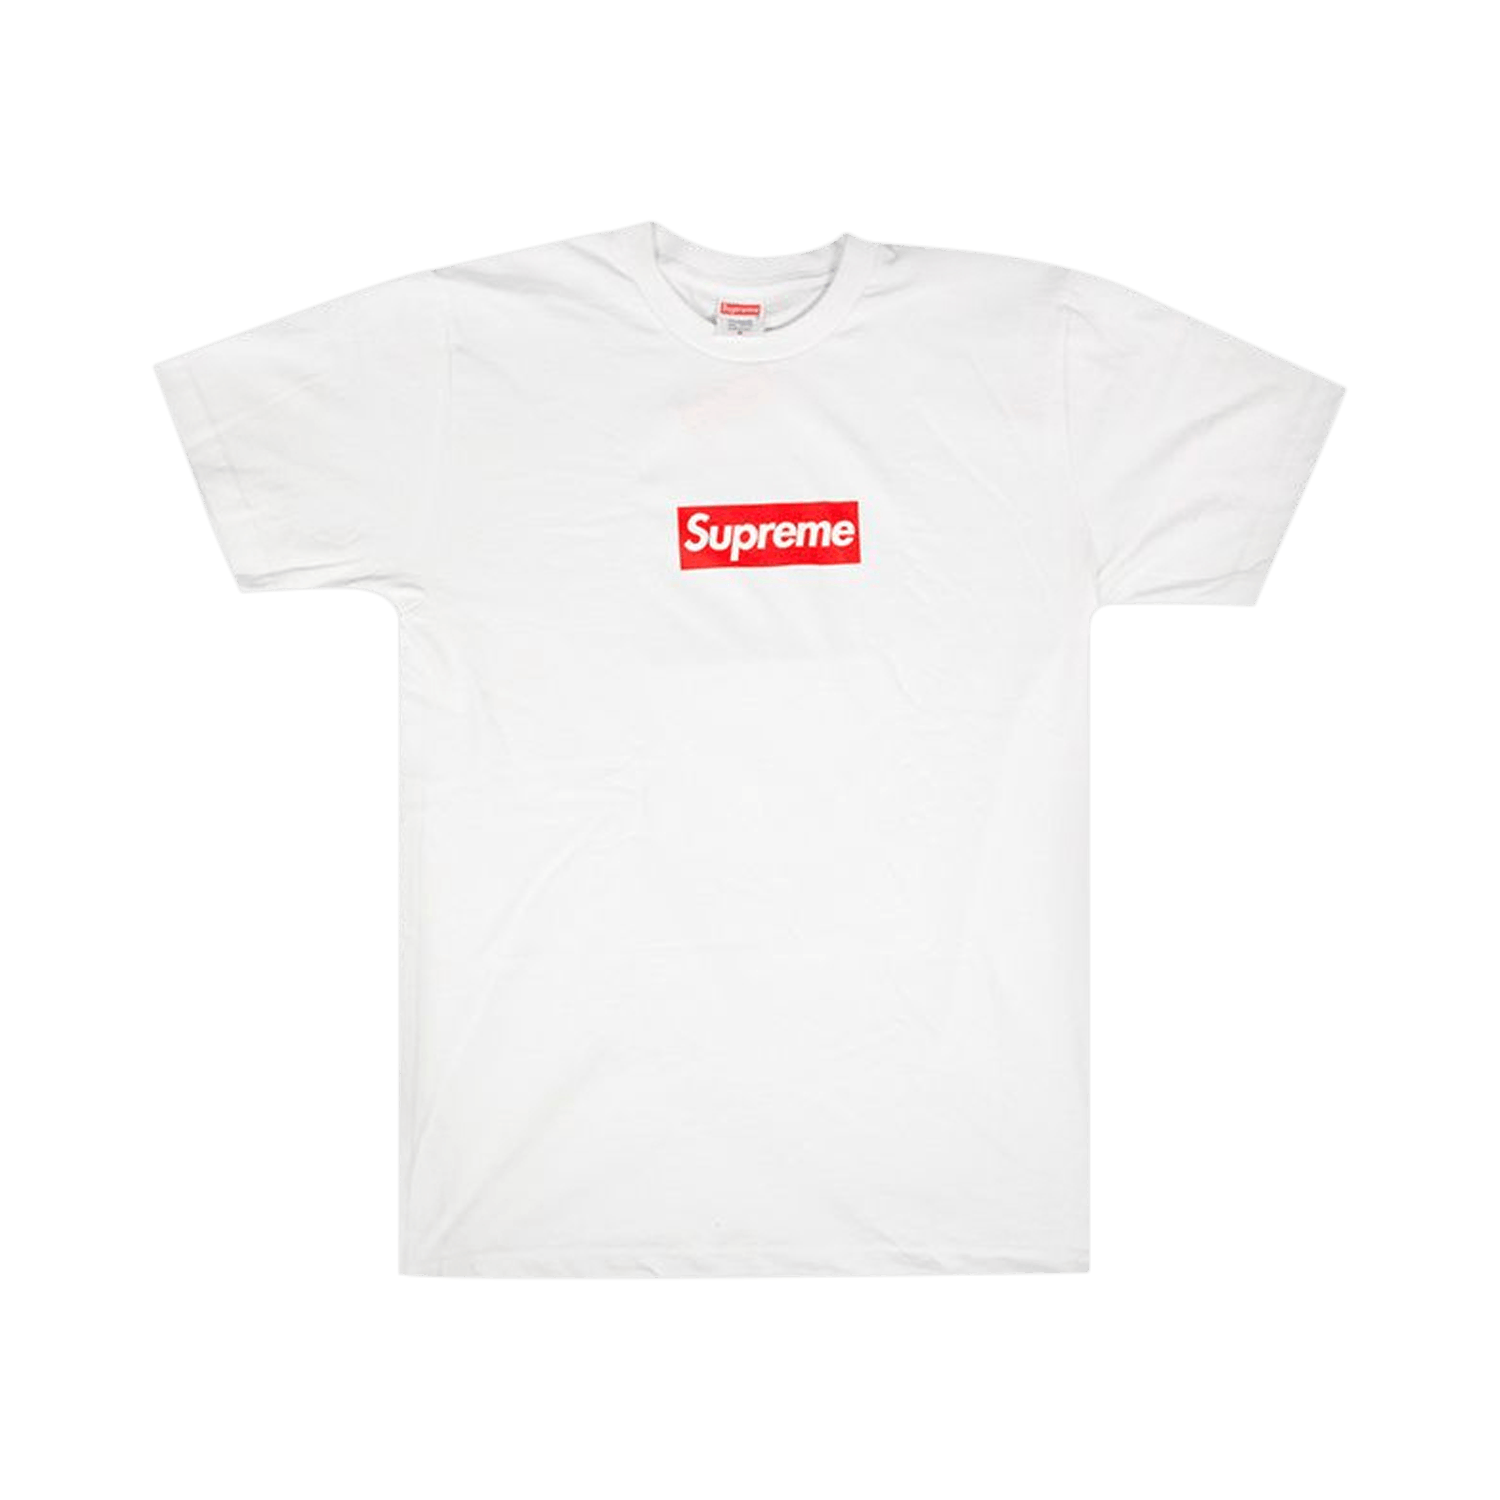 Supreme 20th Anniversary Box Logo T-Shirt 'White' - Supreme - SS14T10 ...